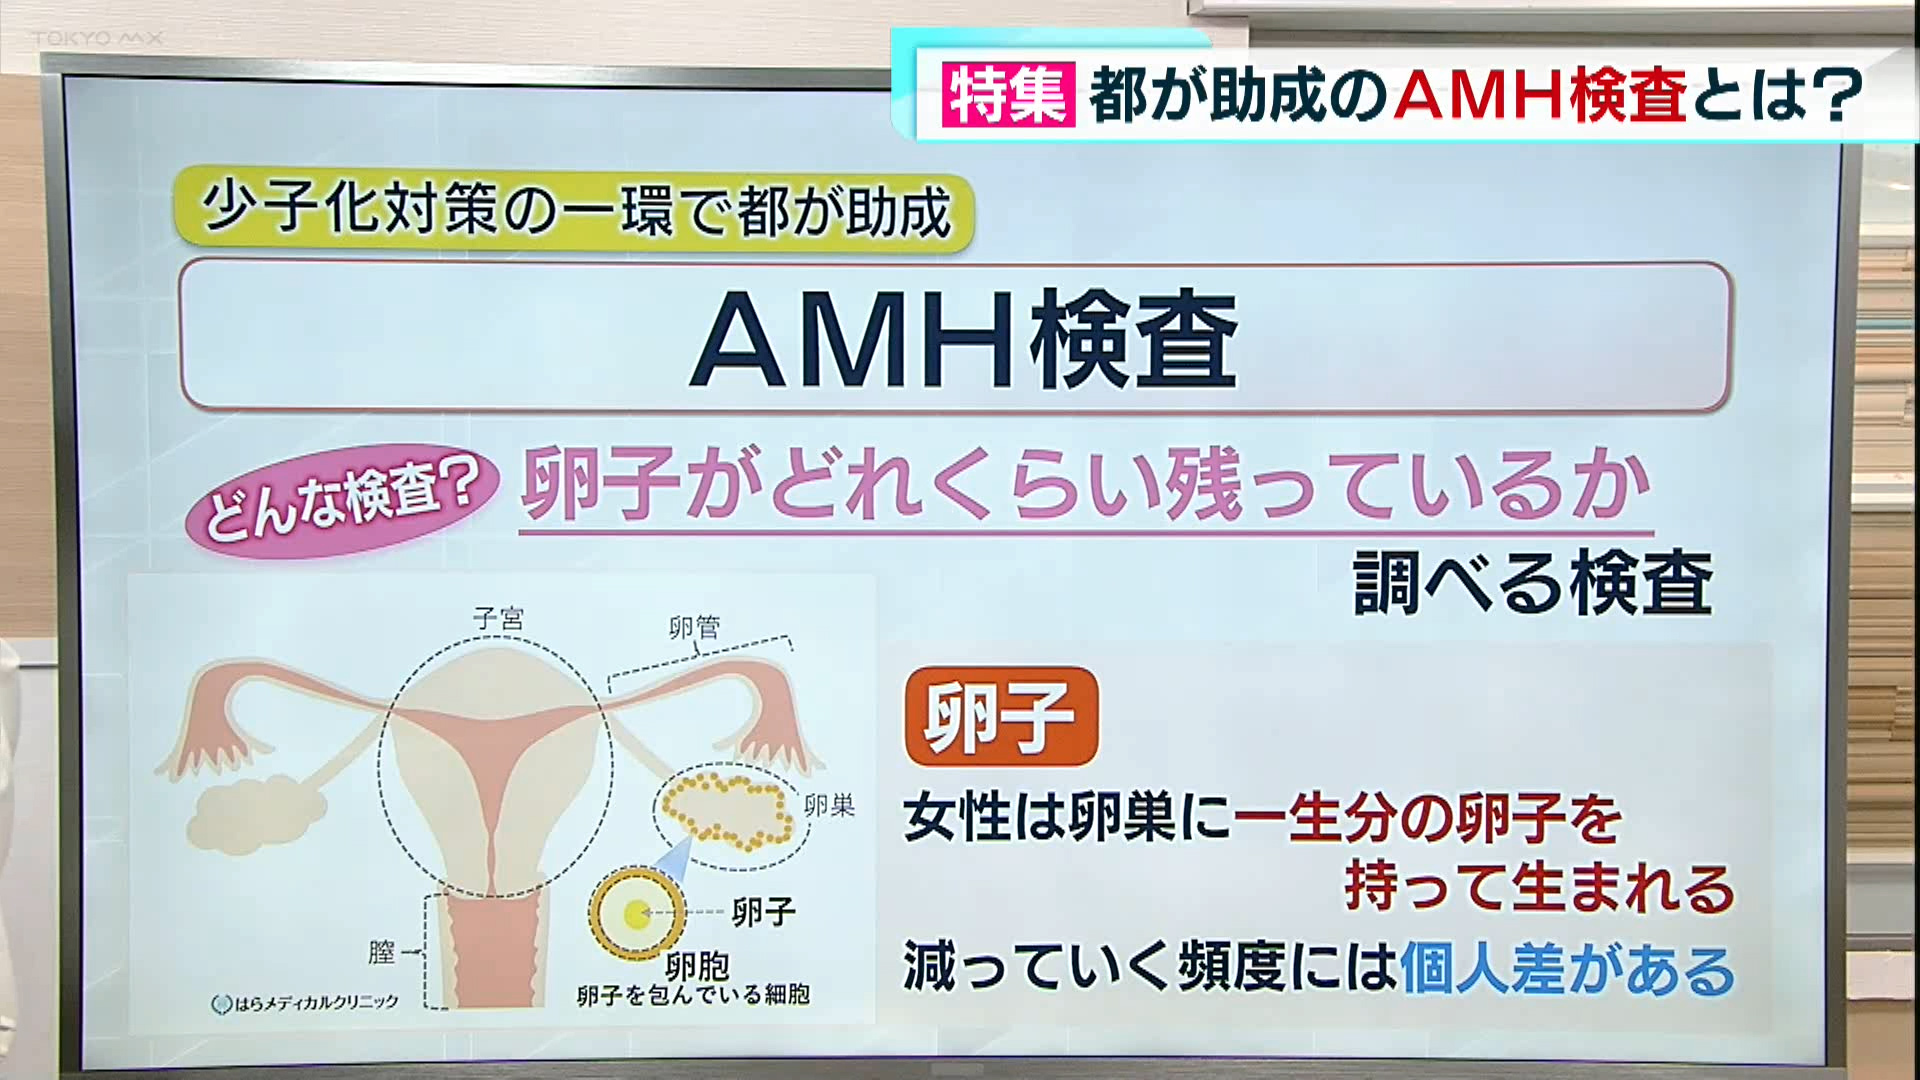 東京都が今年度から少子化対策の一環として、卵子の数を調べるAMH検査の助成に力を入れています。きょうは検査の現状と課題についてお伝えします。
